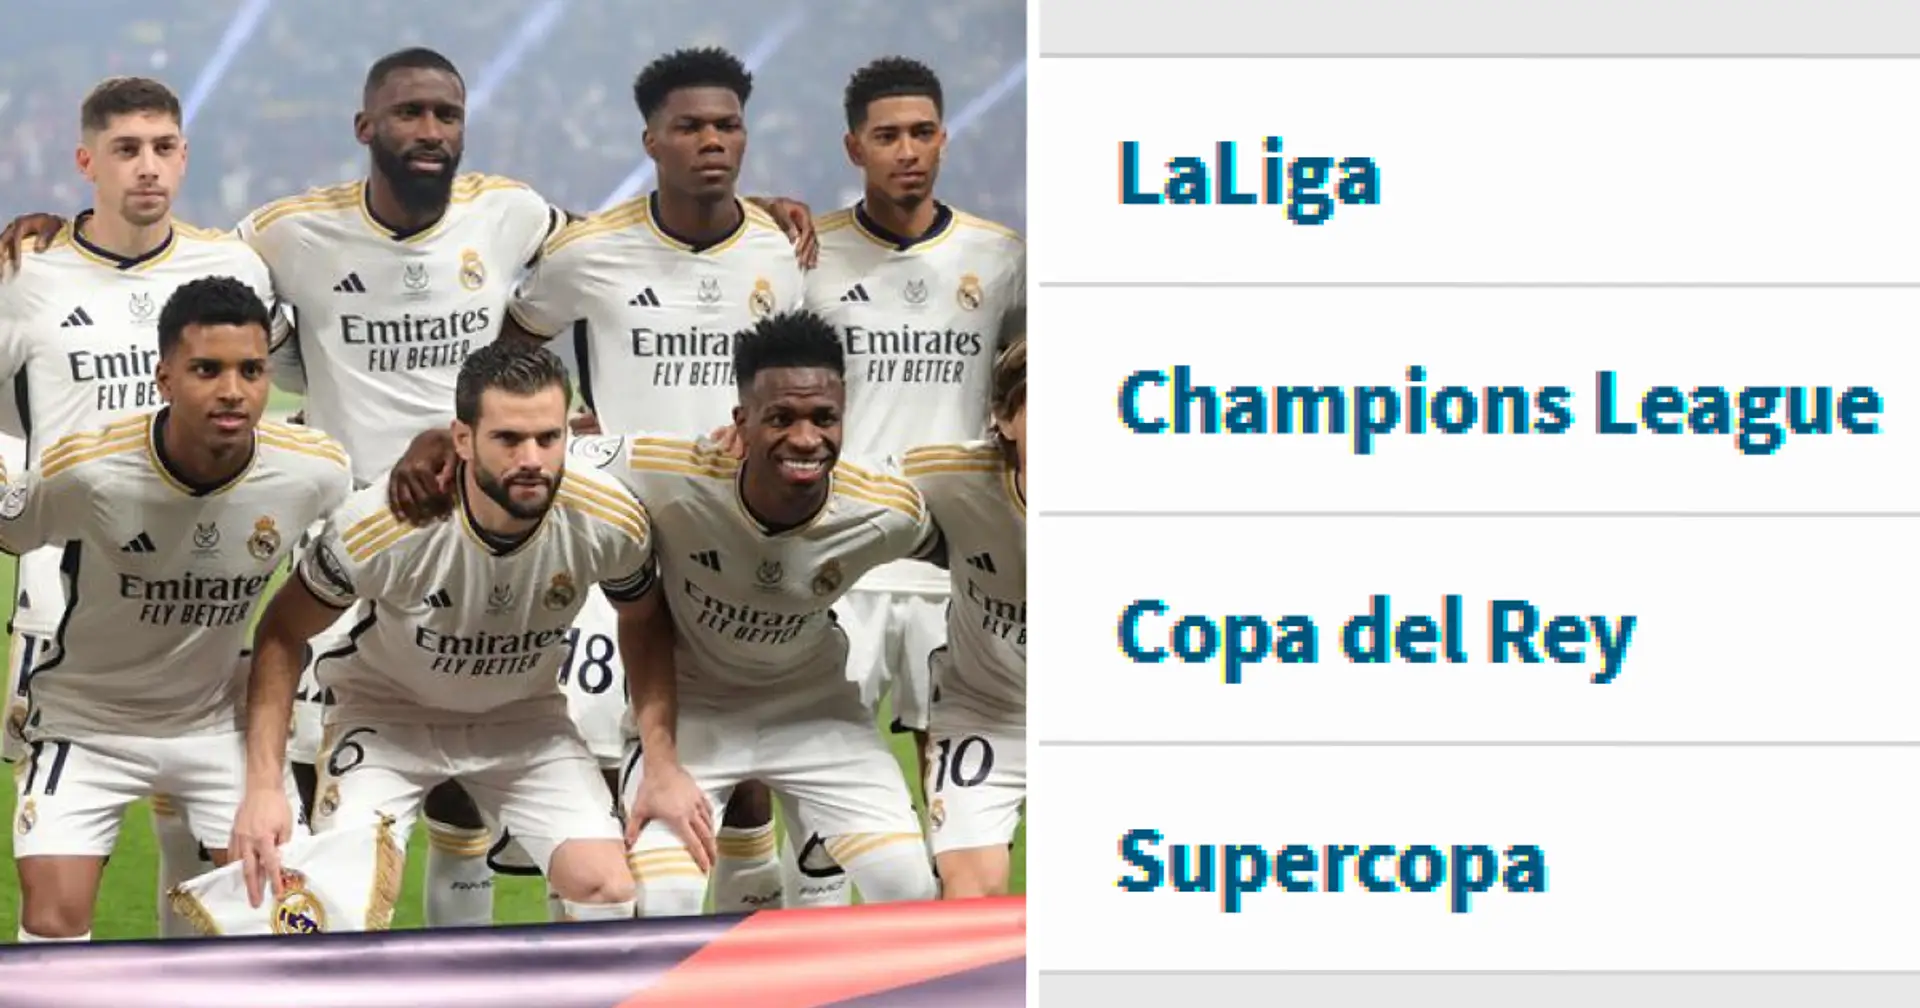 Sie verpassen kein Spiel: Die 2 Spieler von Real Madrid mit den meisten Einsätzen in dieser Saison